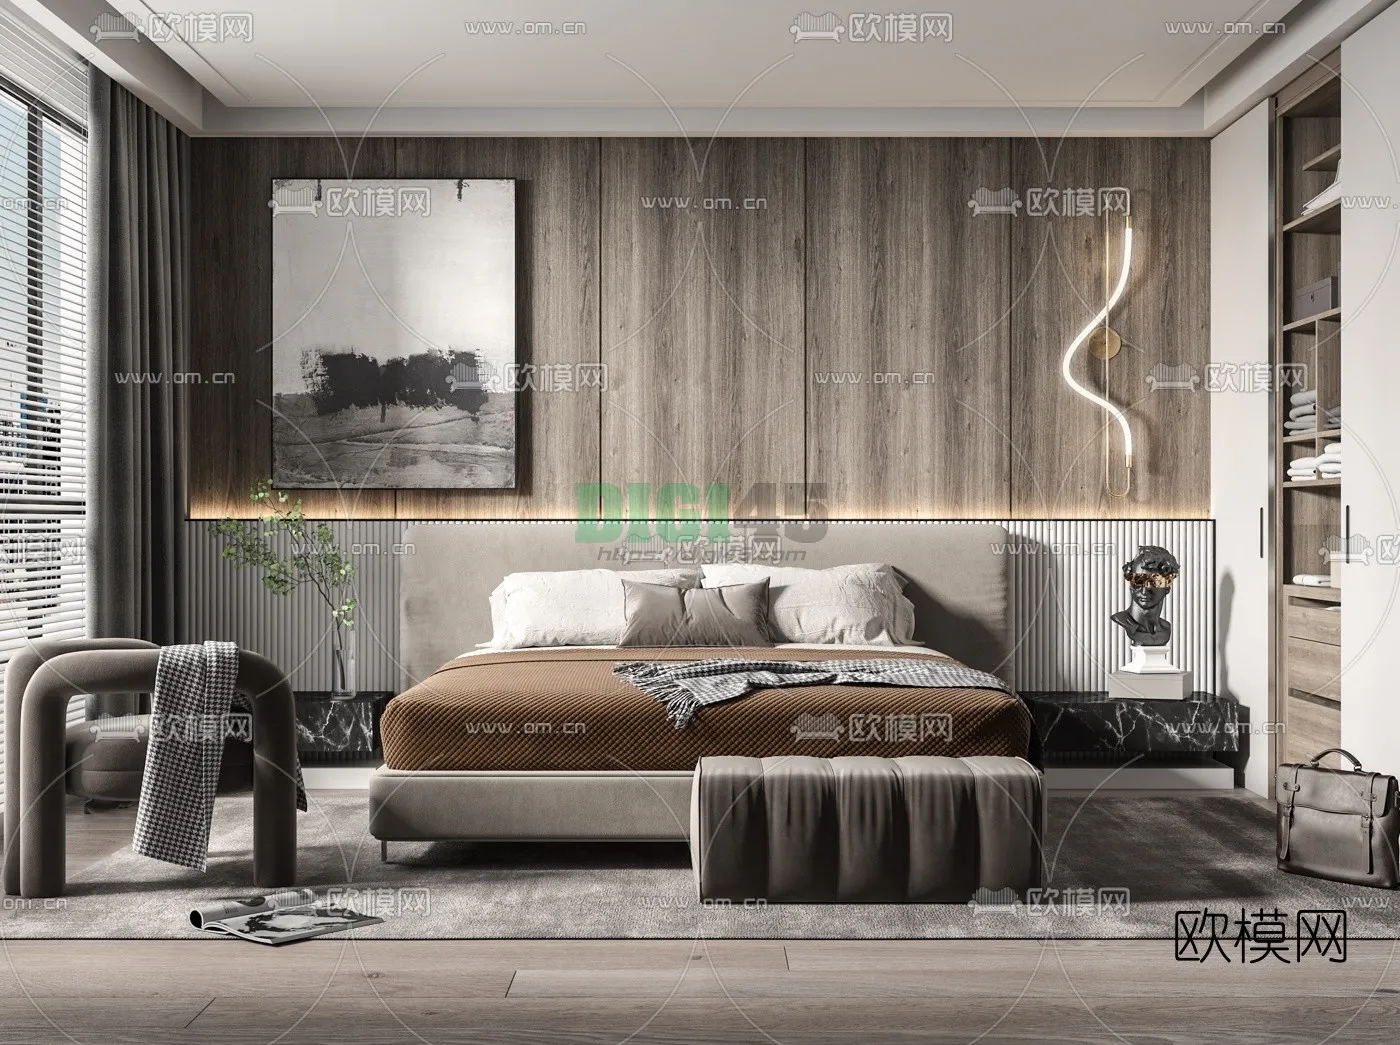 Bedroom 3D Scenes – 1102